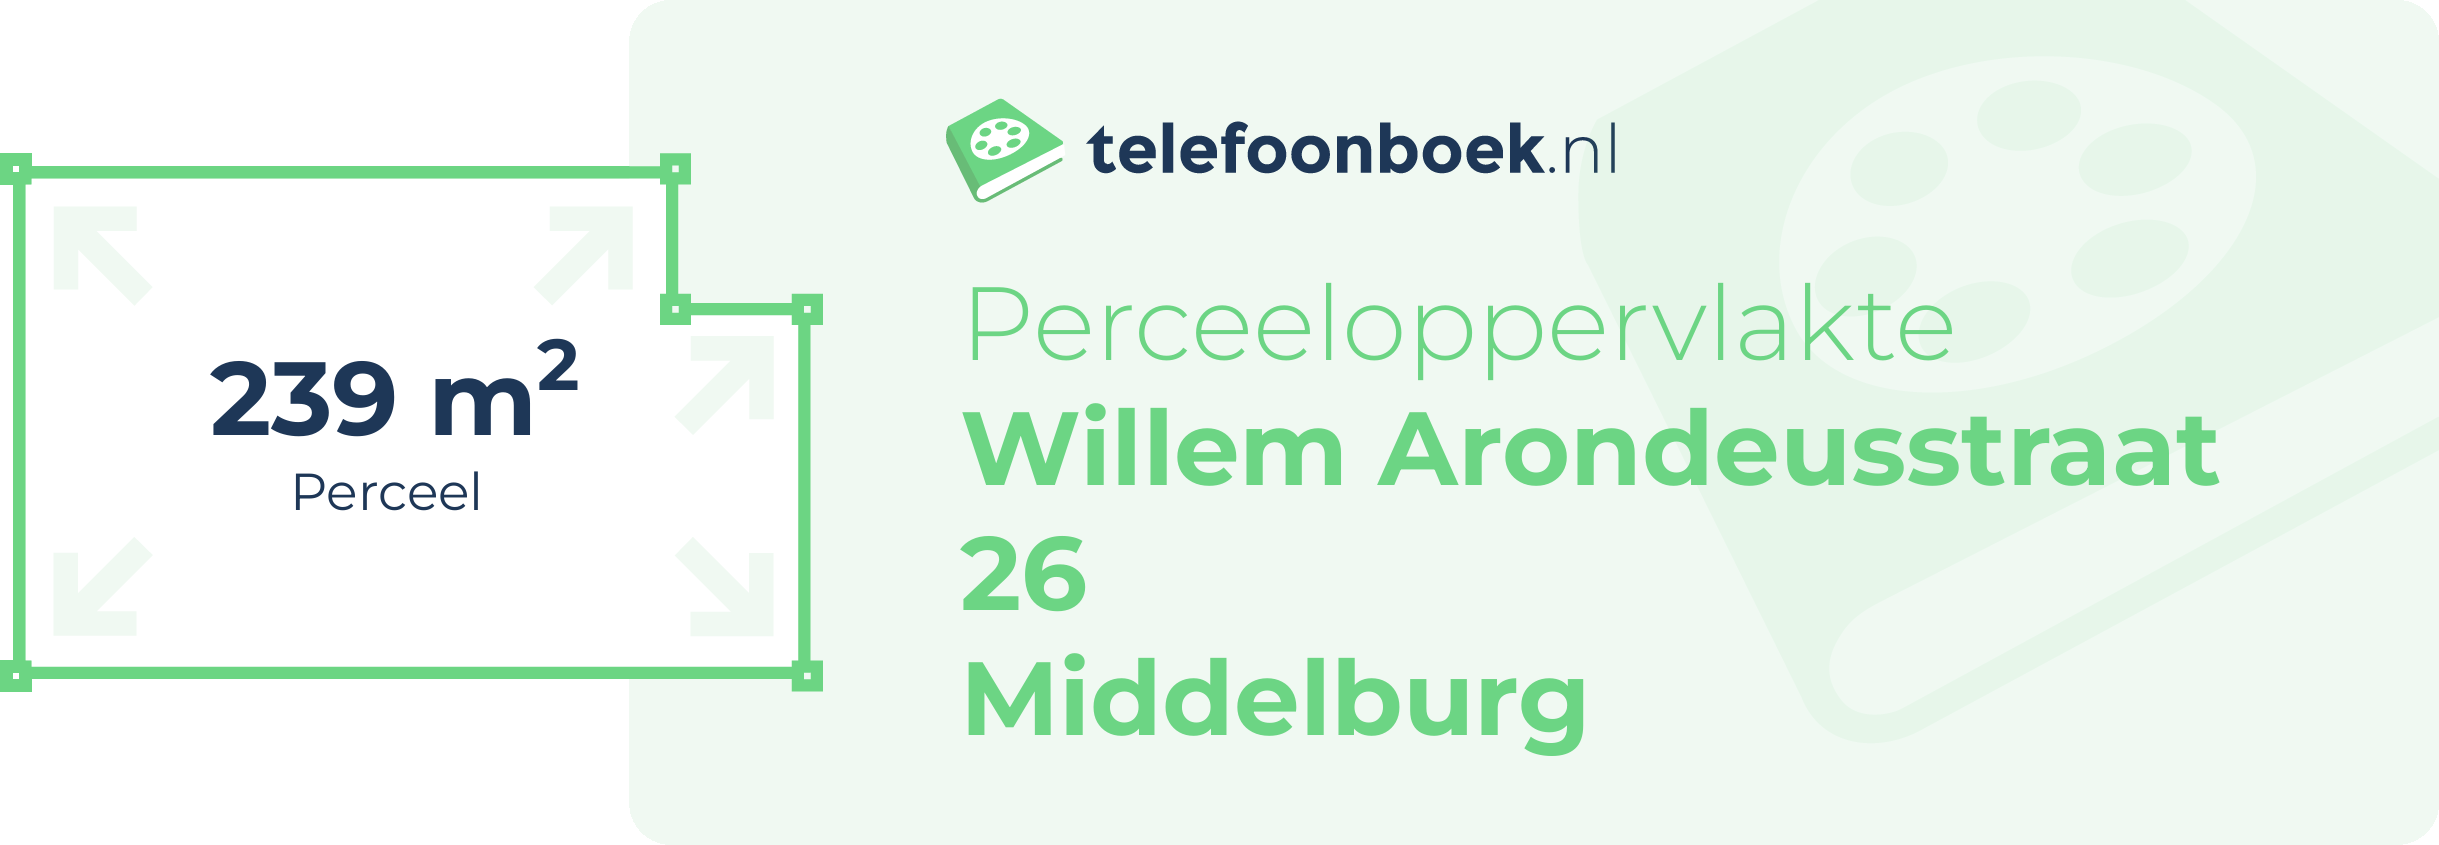 Perceeloppervlakte Willem Arondeusstraat 26 Middelburg